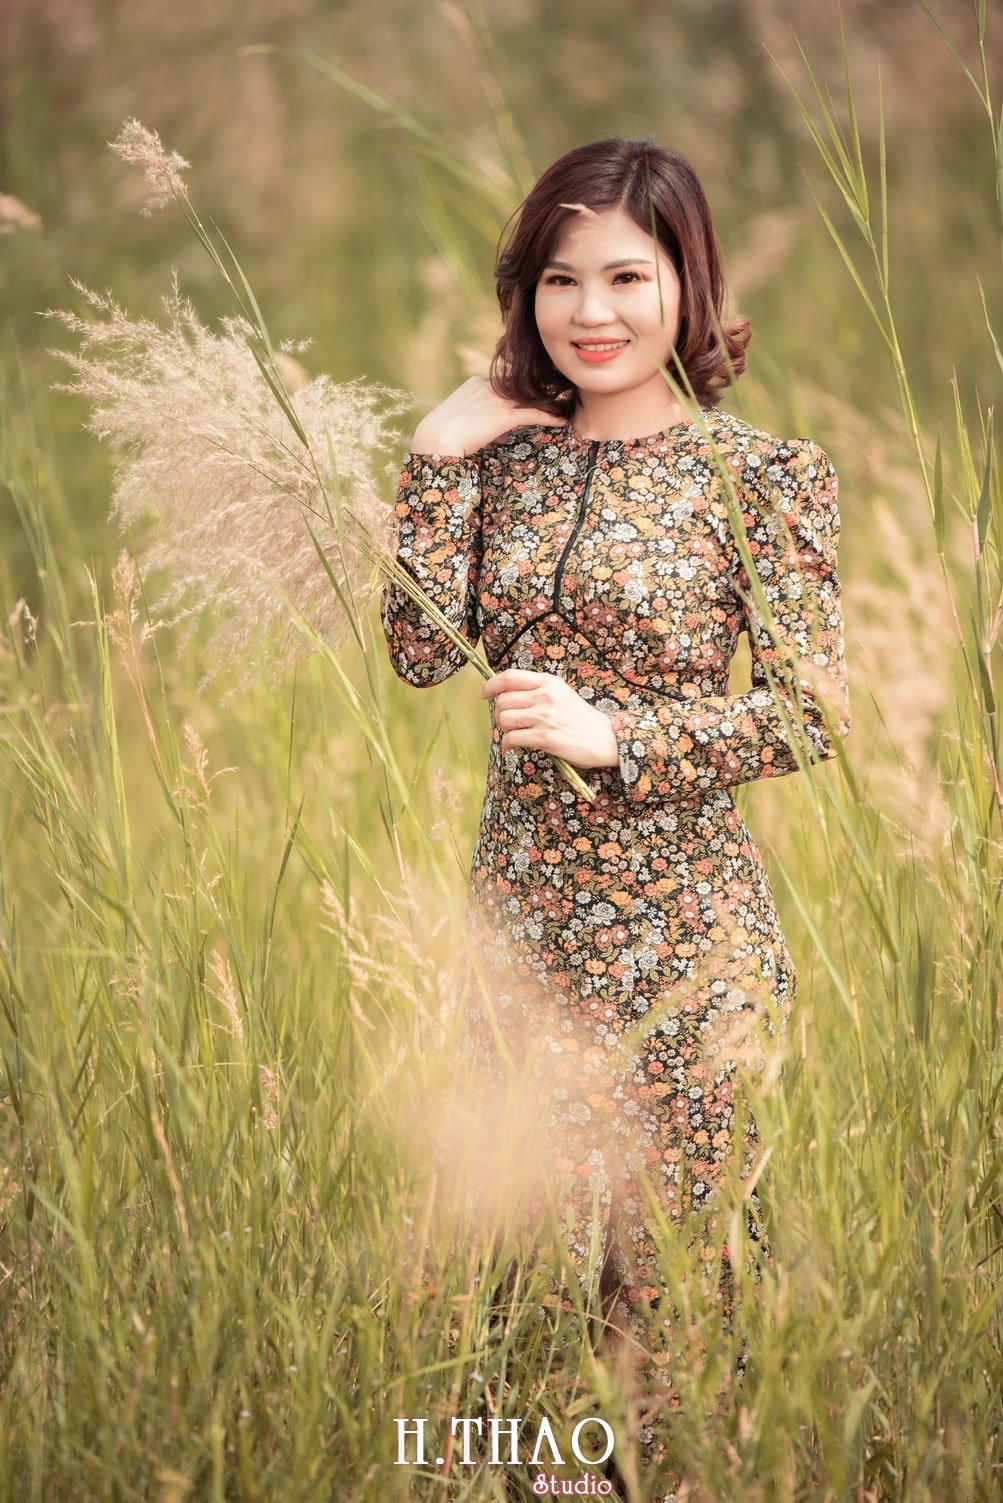 Canh Dong Co Lau 5 - Chụp ảnh với cánh đồng cỏ lau quận 9 tuyệt đẹp - HThao Studio